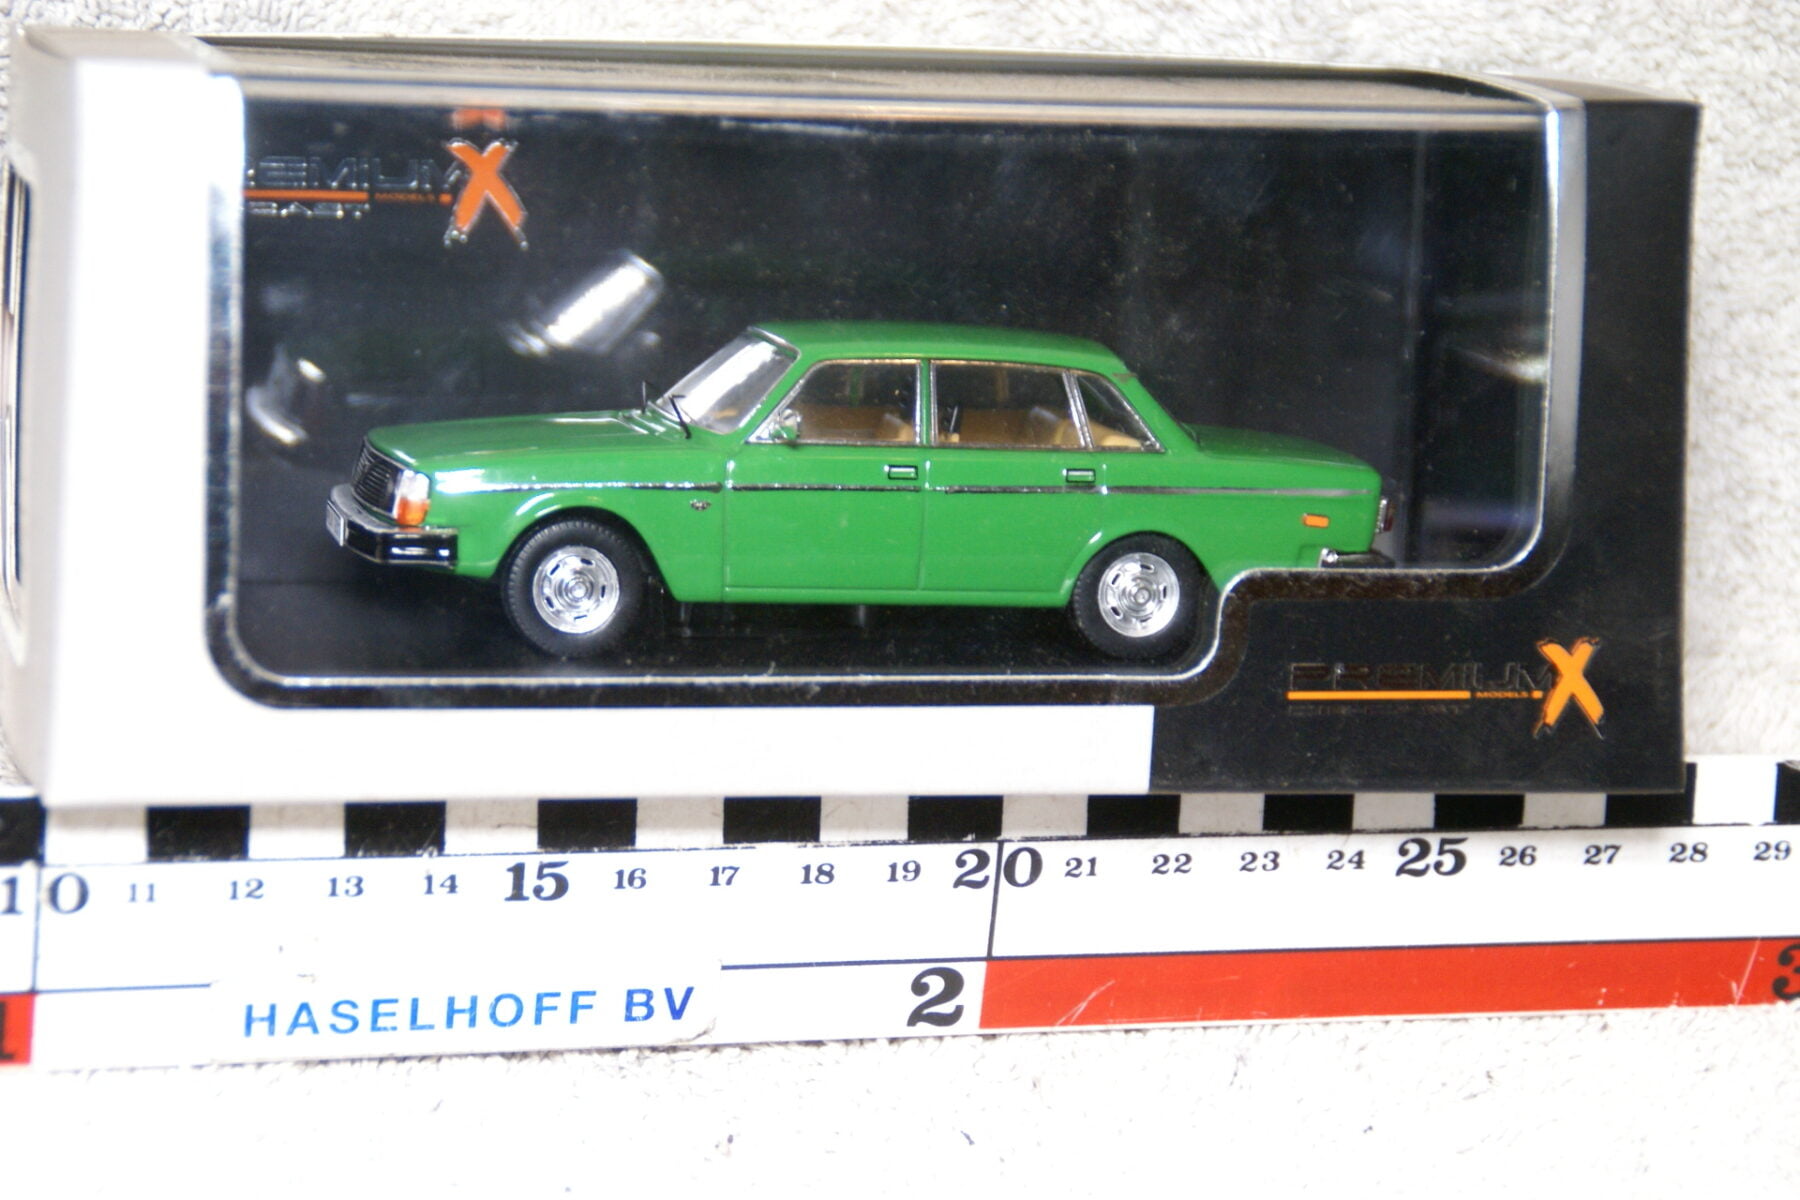 DSC07380 miniatuur 1977 Volvo 244 groen 1op43 210001 PremiumX MB